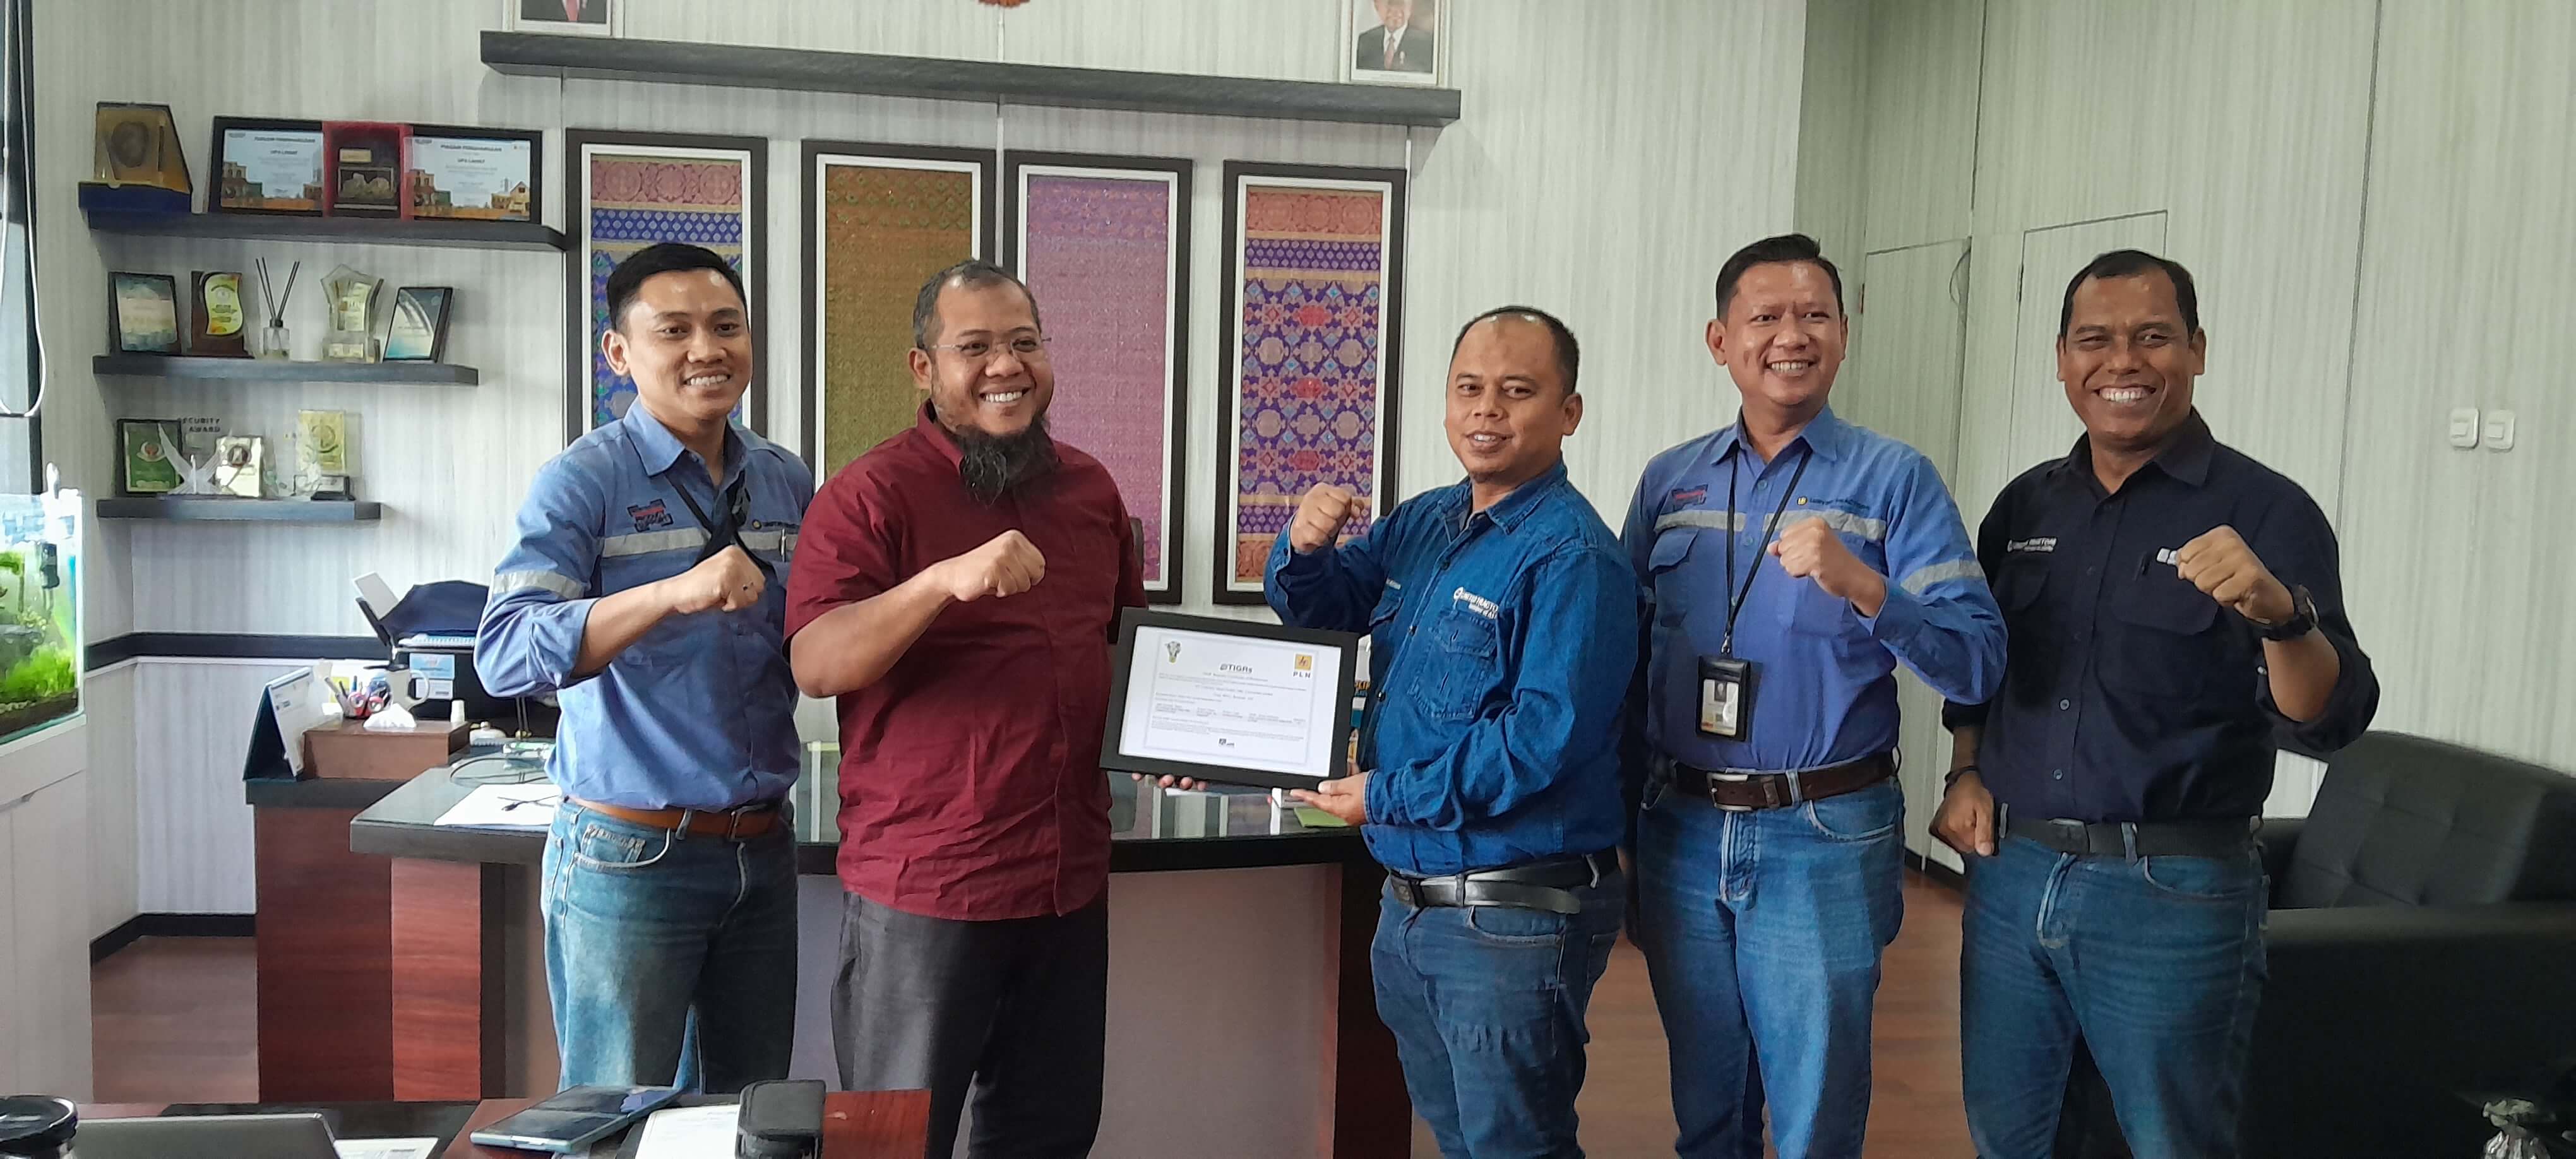 PT United Tractors Tbk Site Tanjung Enim Perusahaan Pertama Yang Mendapatkan Sertifikat REC Dari PLN UP3 Lahat